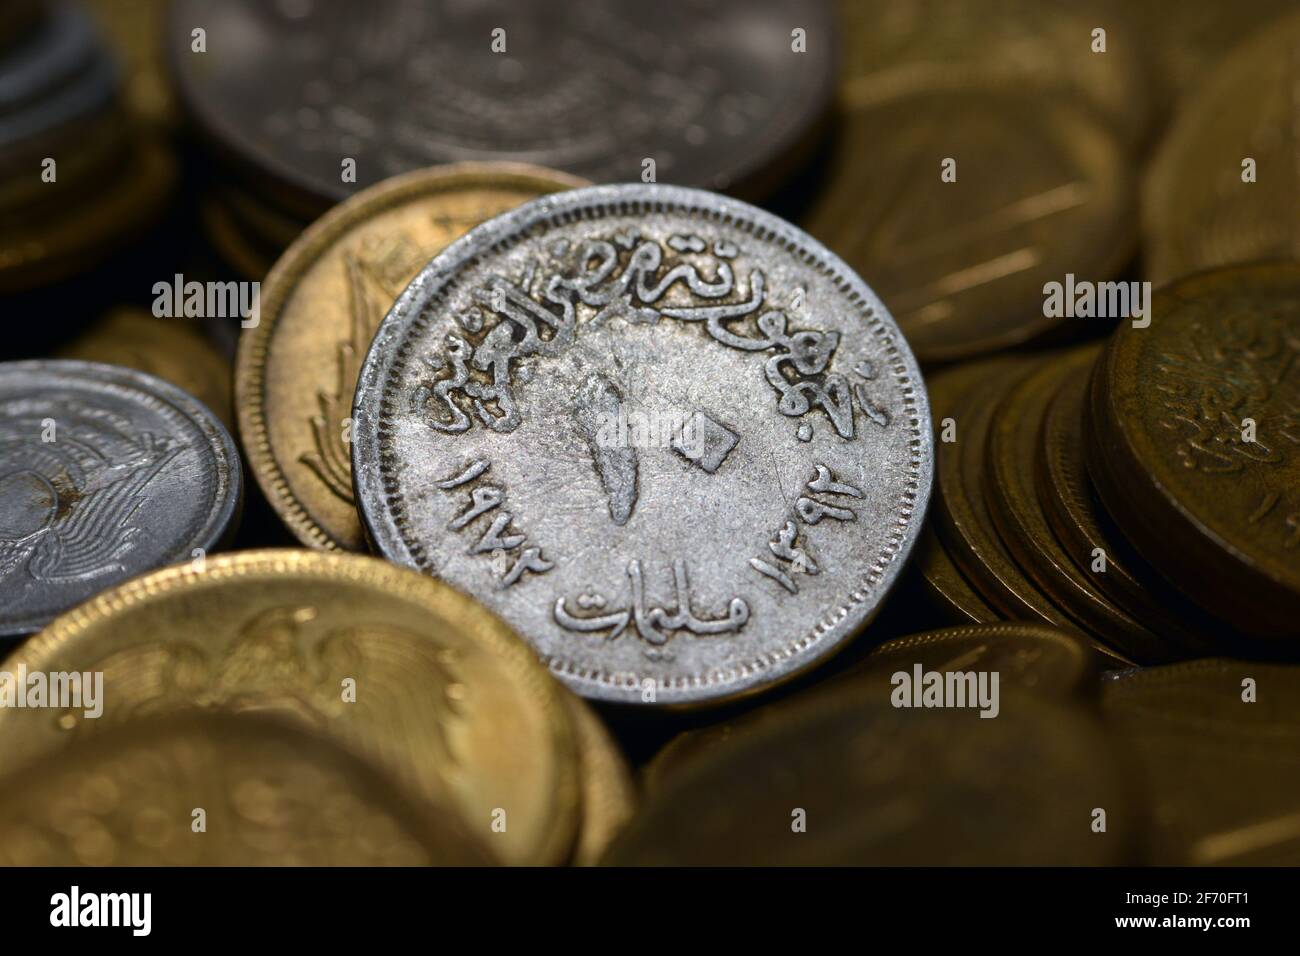 Dieci milliemi egiziani moneta 1972 (osserva il lato della moneta), vecchi soldi egiziani di 10 milliemi moneta, vintage retro, il fondo d'argento vecchia moneta. Foto Stock